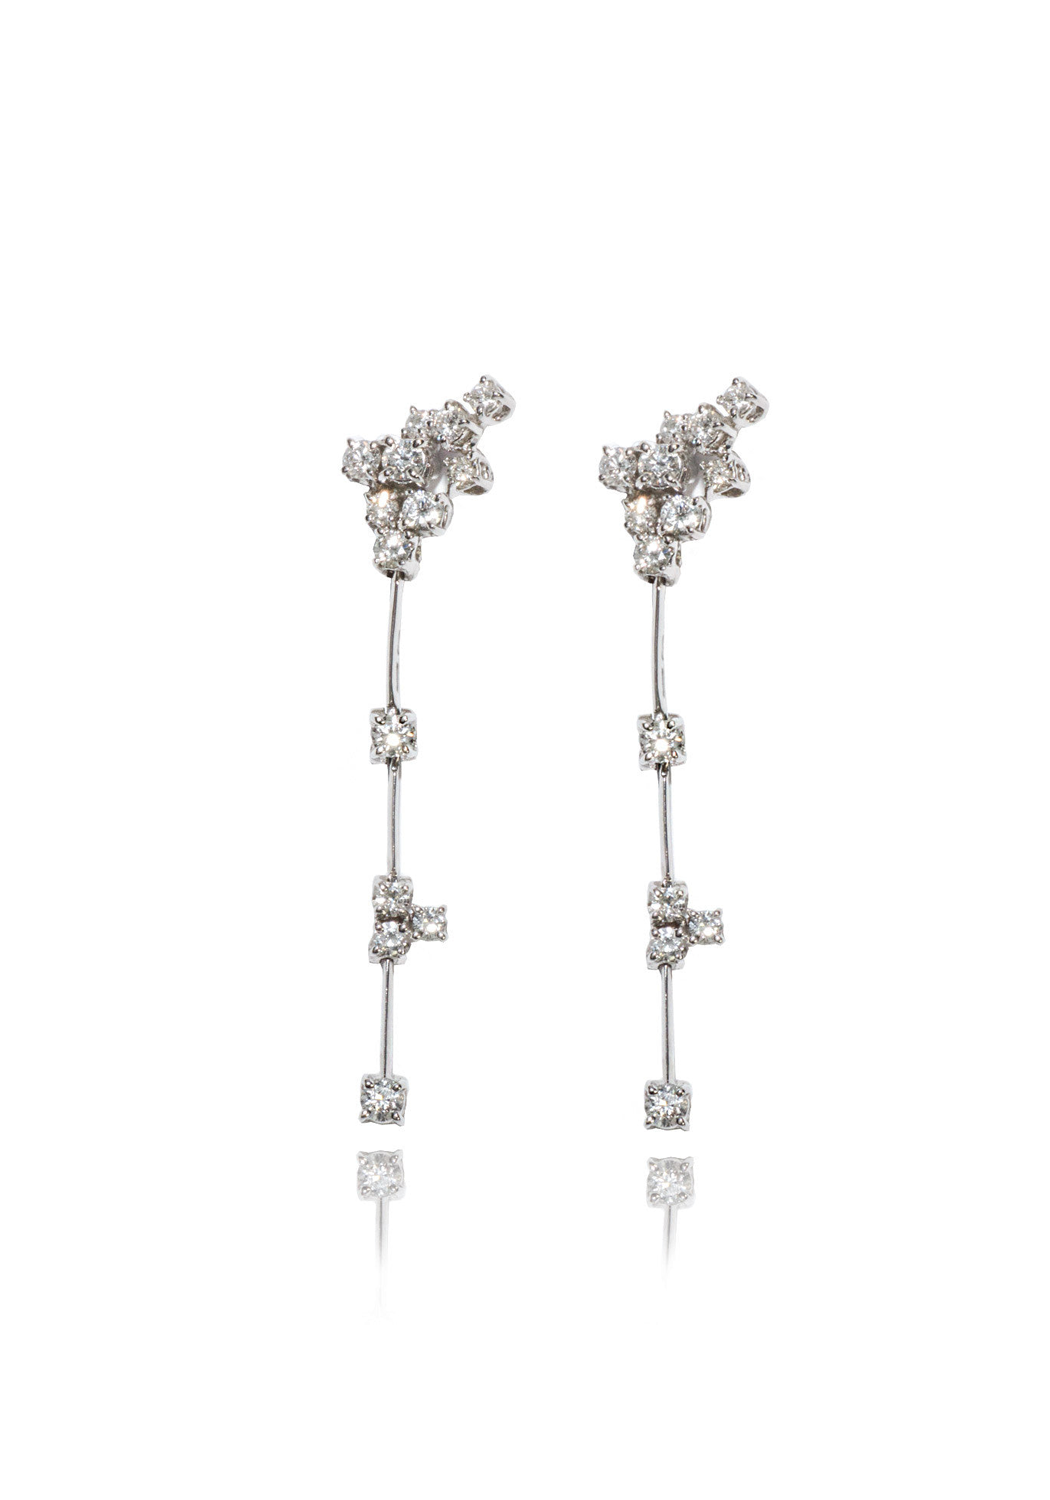 Stefan Hafner 18KWG Air Cluster Diamond Earrings | OsterJewelers.com